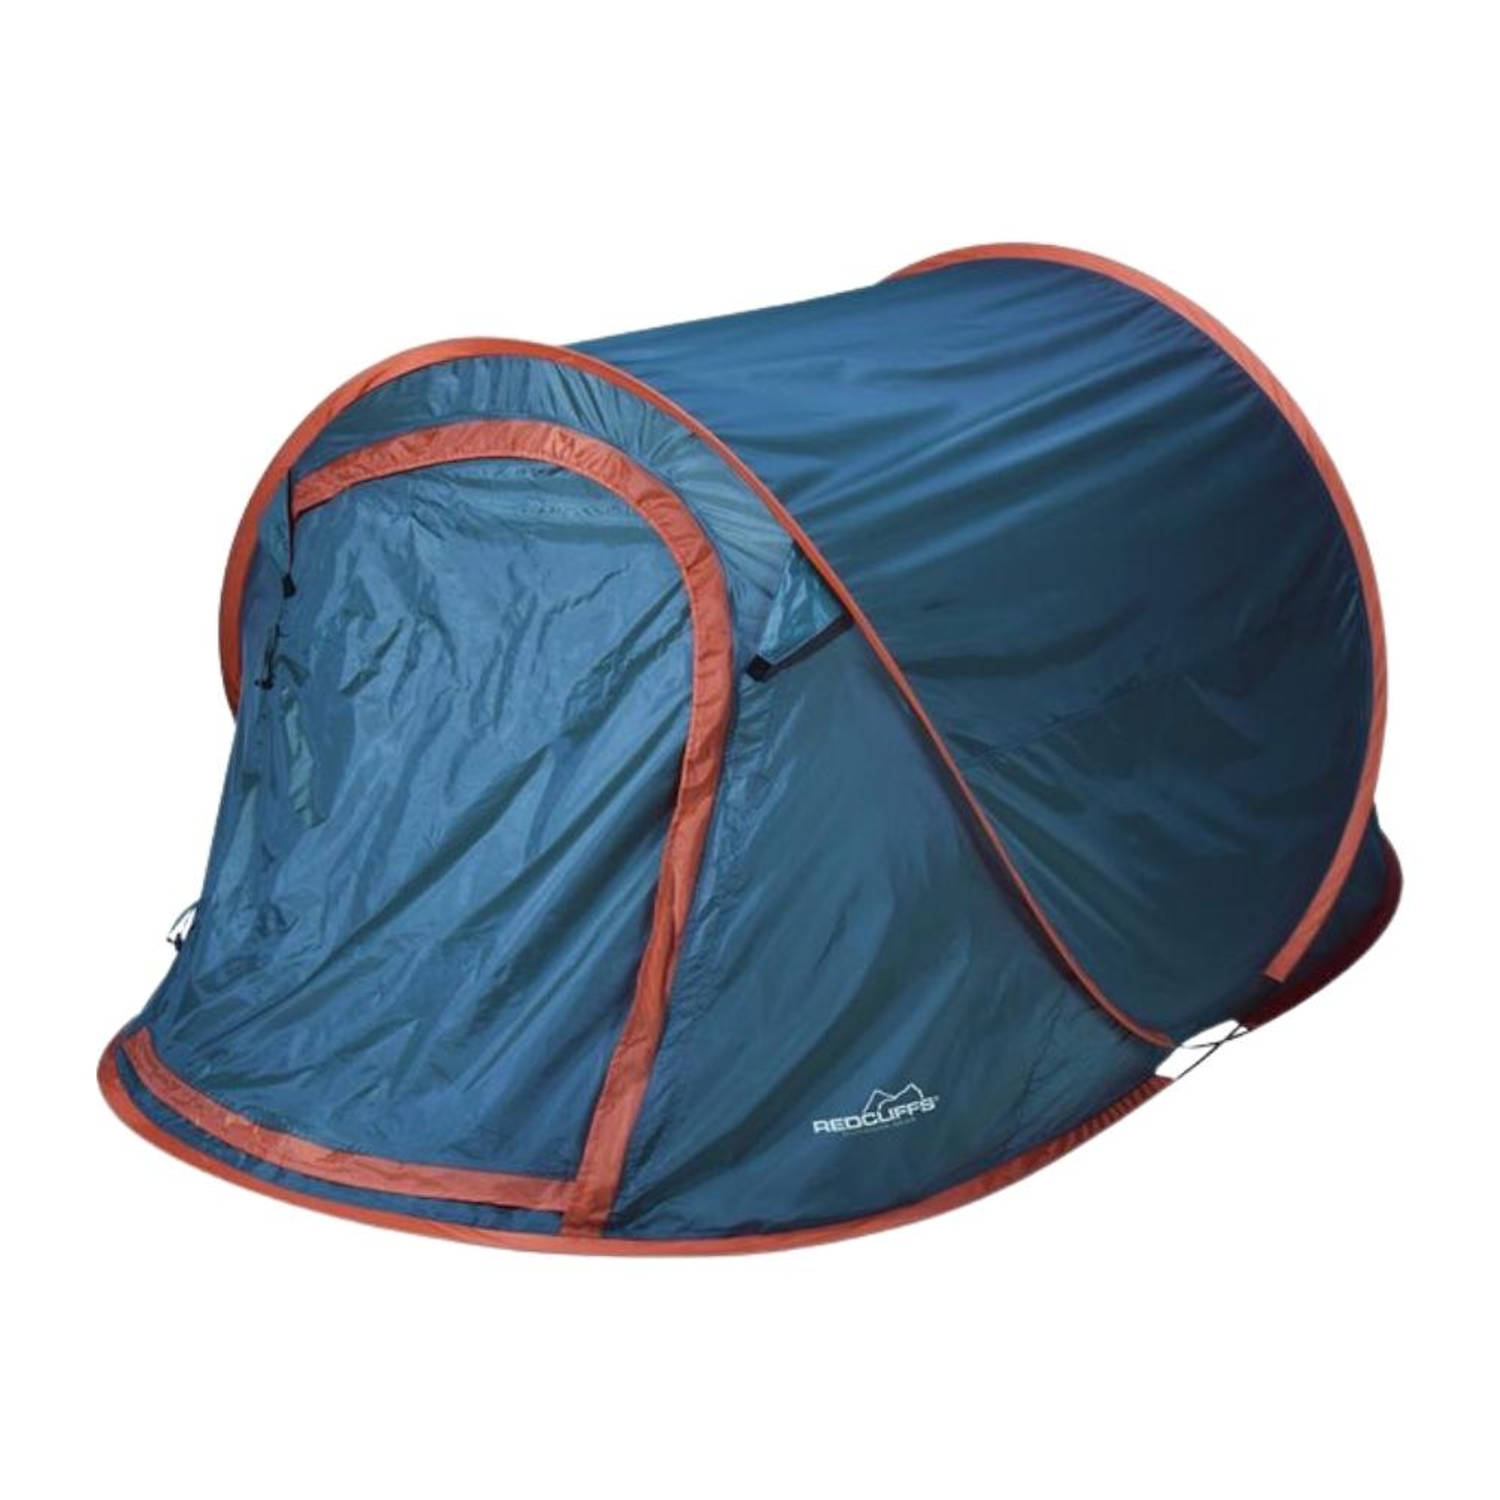 Orange85 Pop Up Tent - 2 Persoons - festivaltent - Blauw - 220x120x95cm - Kamperen